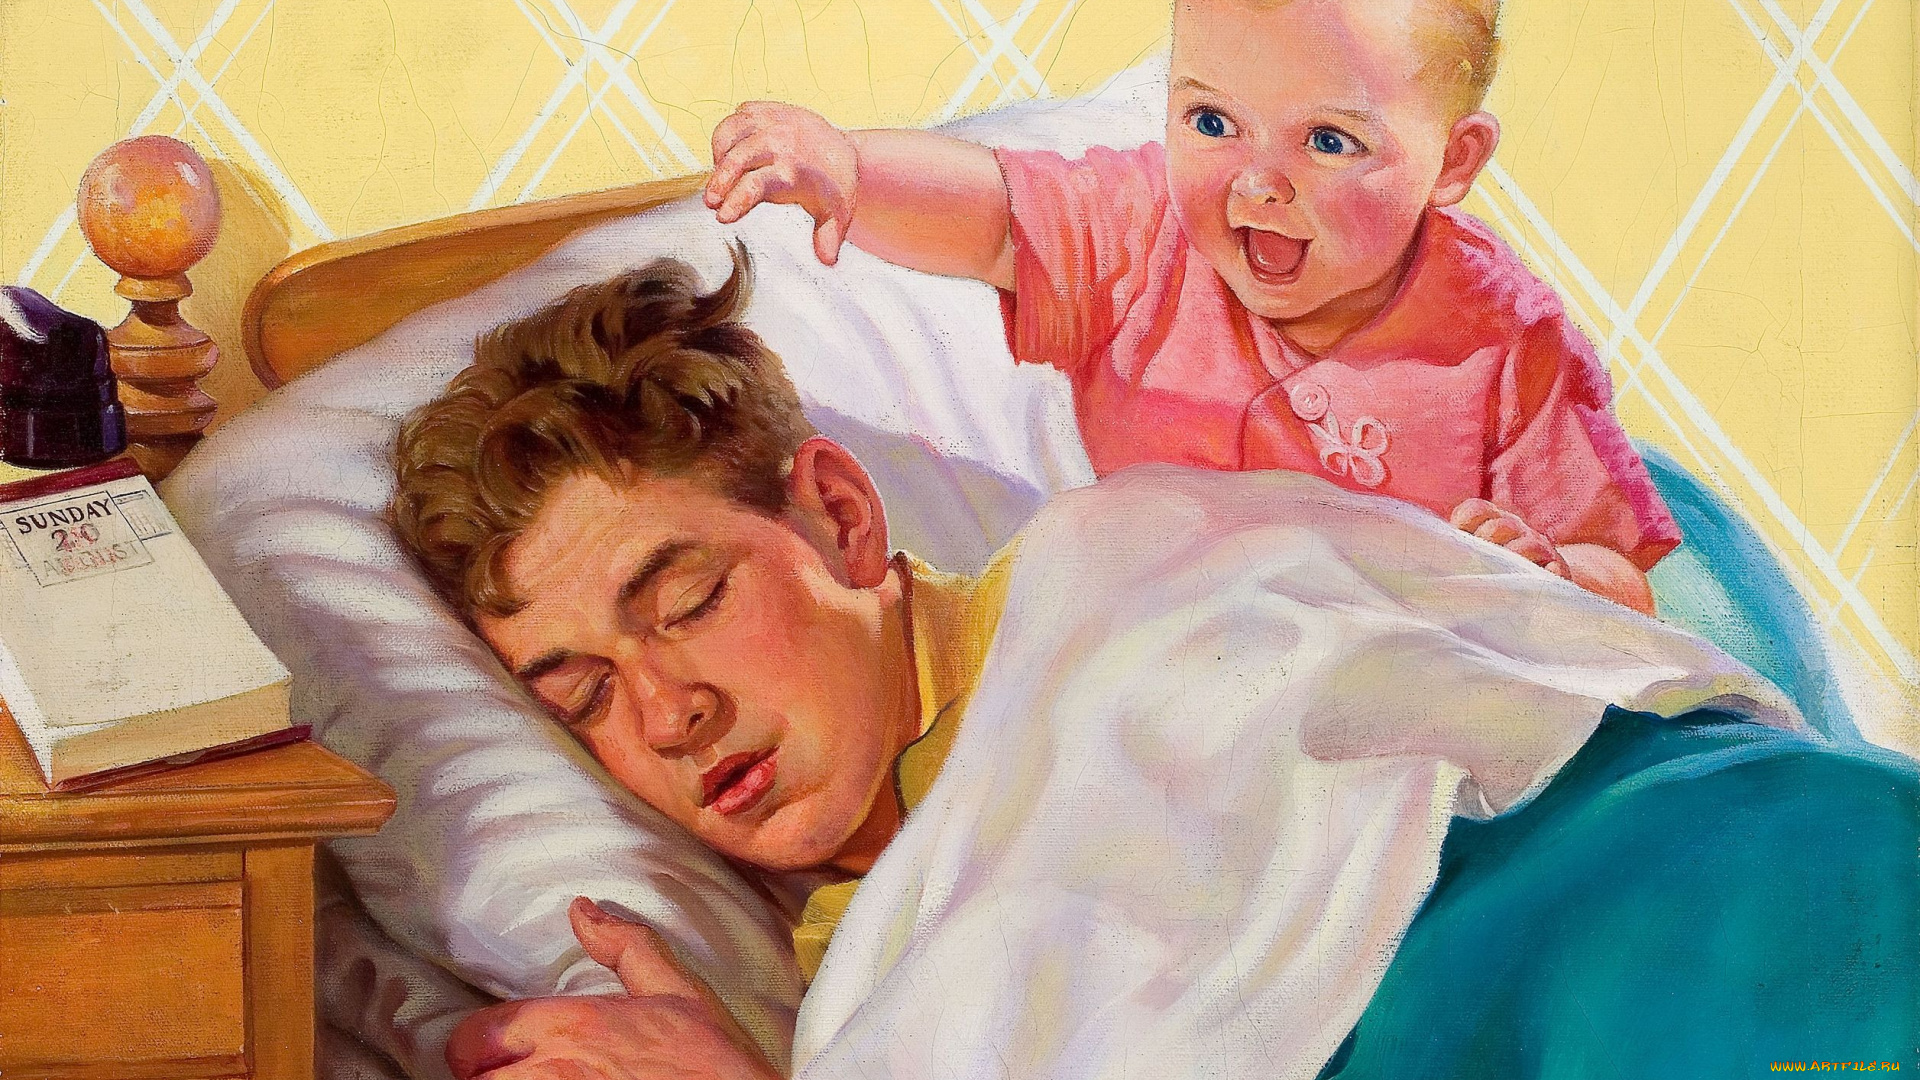 Сын разбудил спящую мать. Рассел Самбрук художник. Картины с детьми и родителями. Картина для папы. Утро в семье.